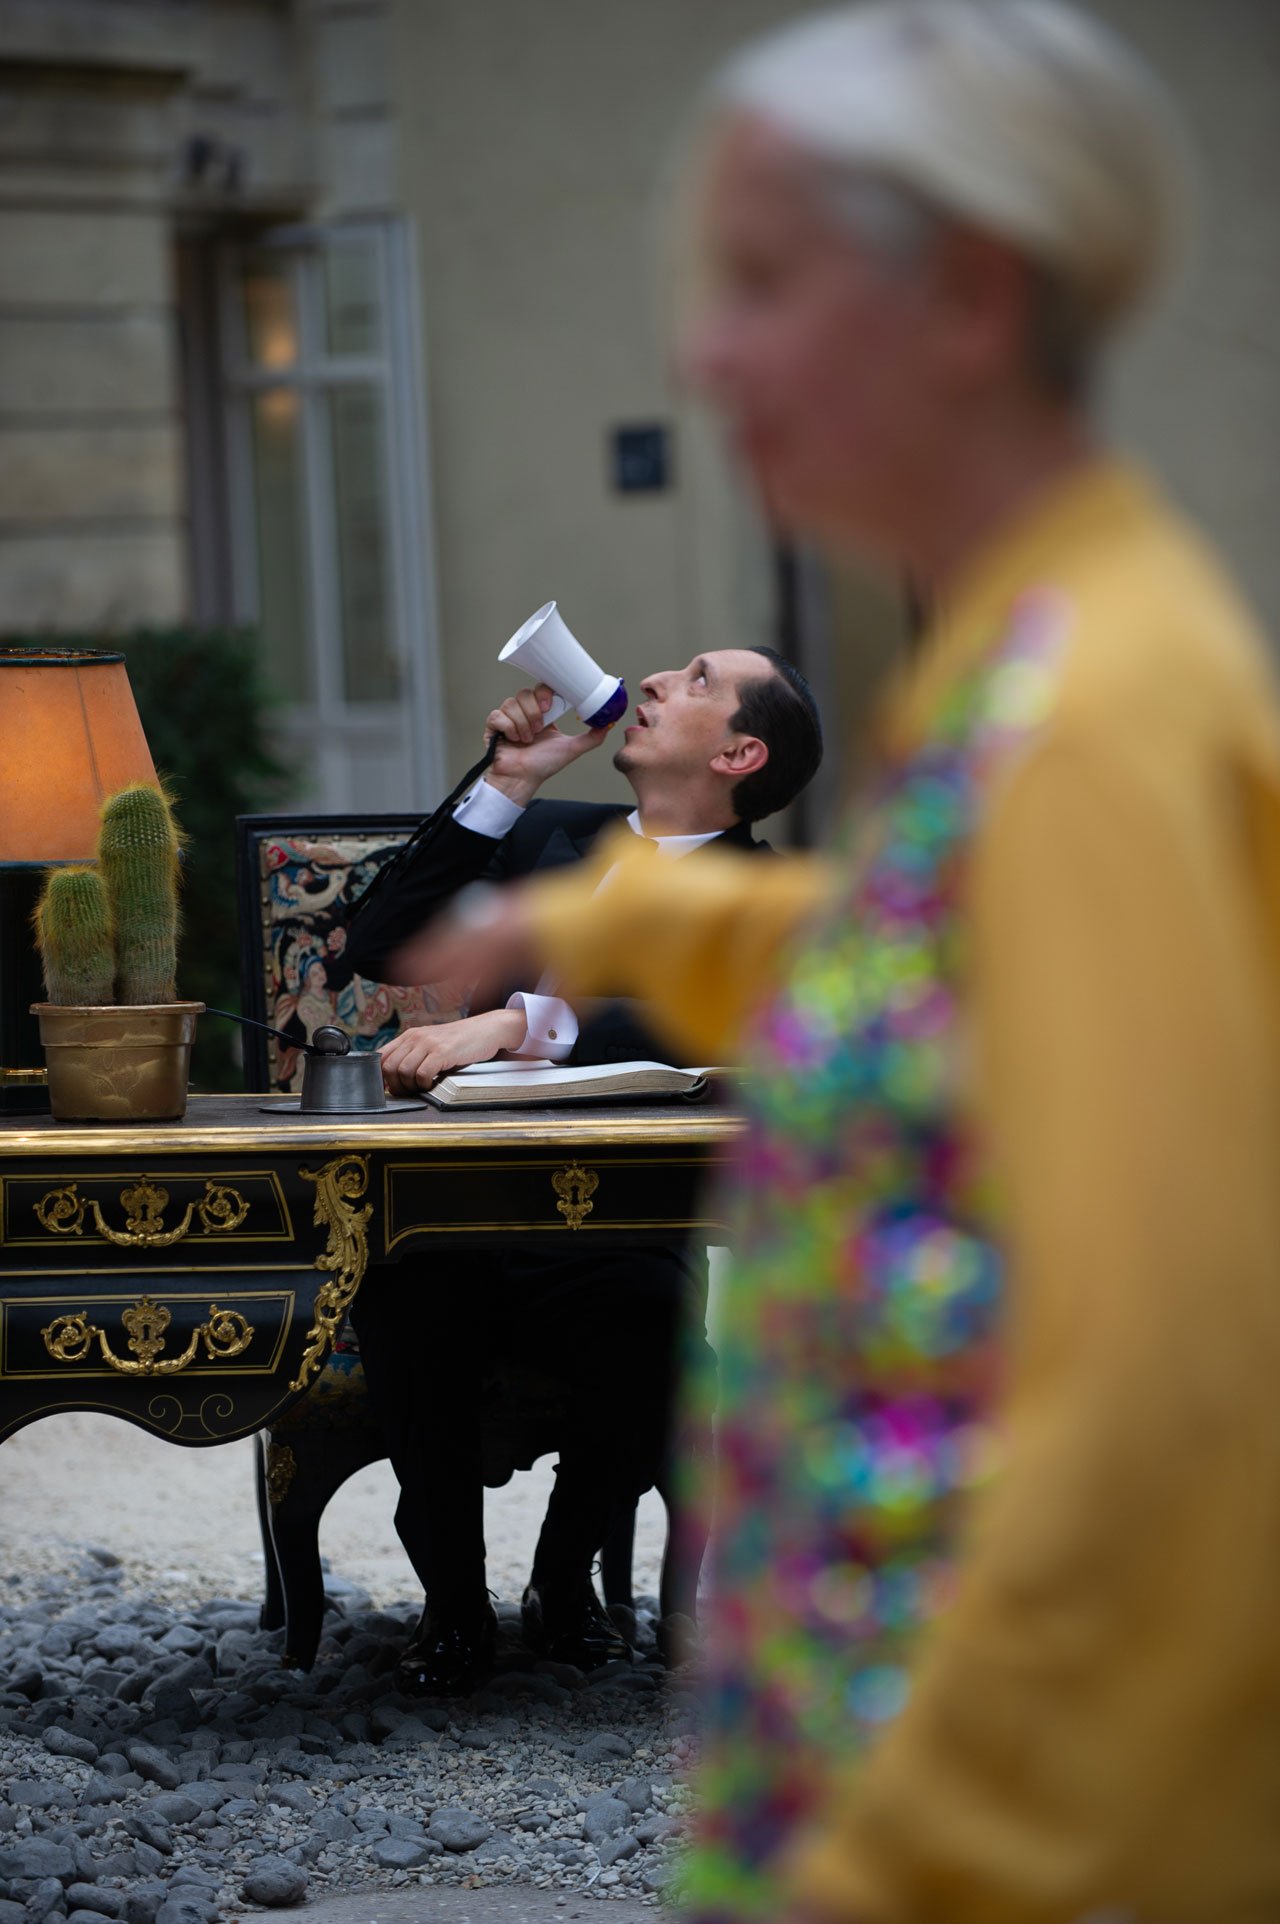 Let's Play theme party by Hermès at the Hôtel Salomon de Rothschild in Paris. Photo © DR.